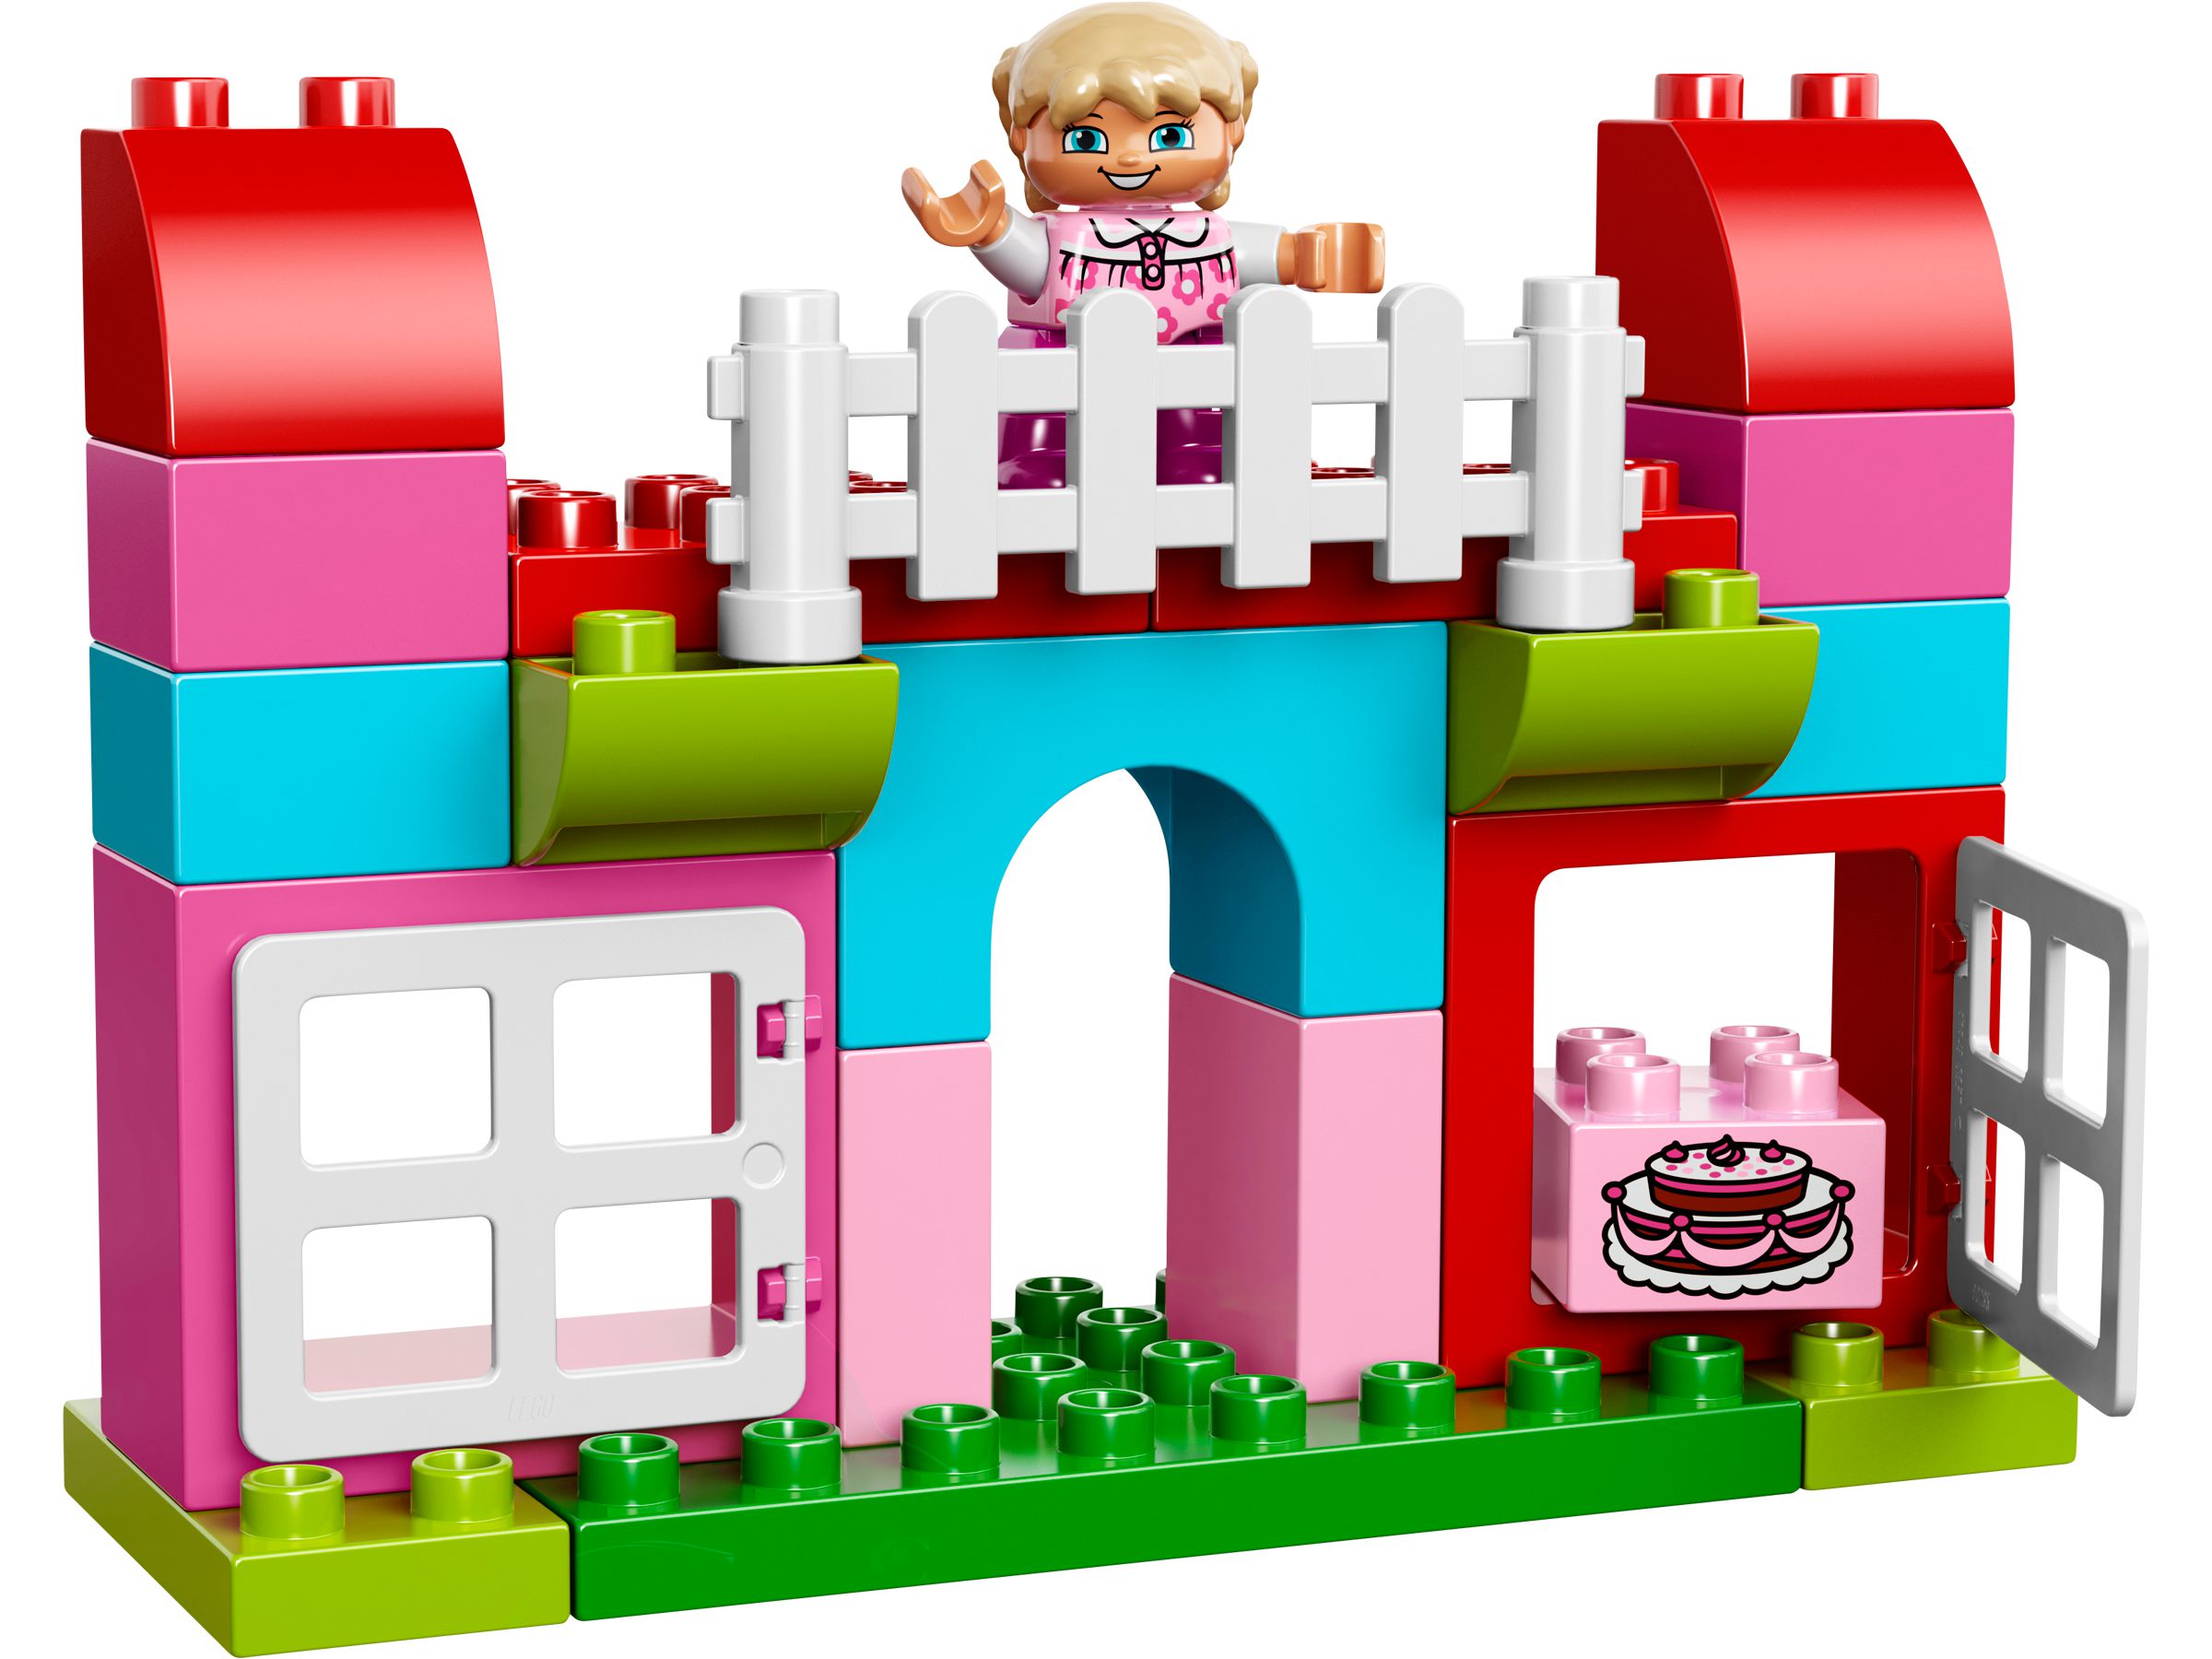 LEGO Duplo 10571 LEGO® DUPLO® Große Steinebox Mädchen LEGO_10571_alt2.jpg